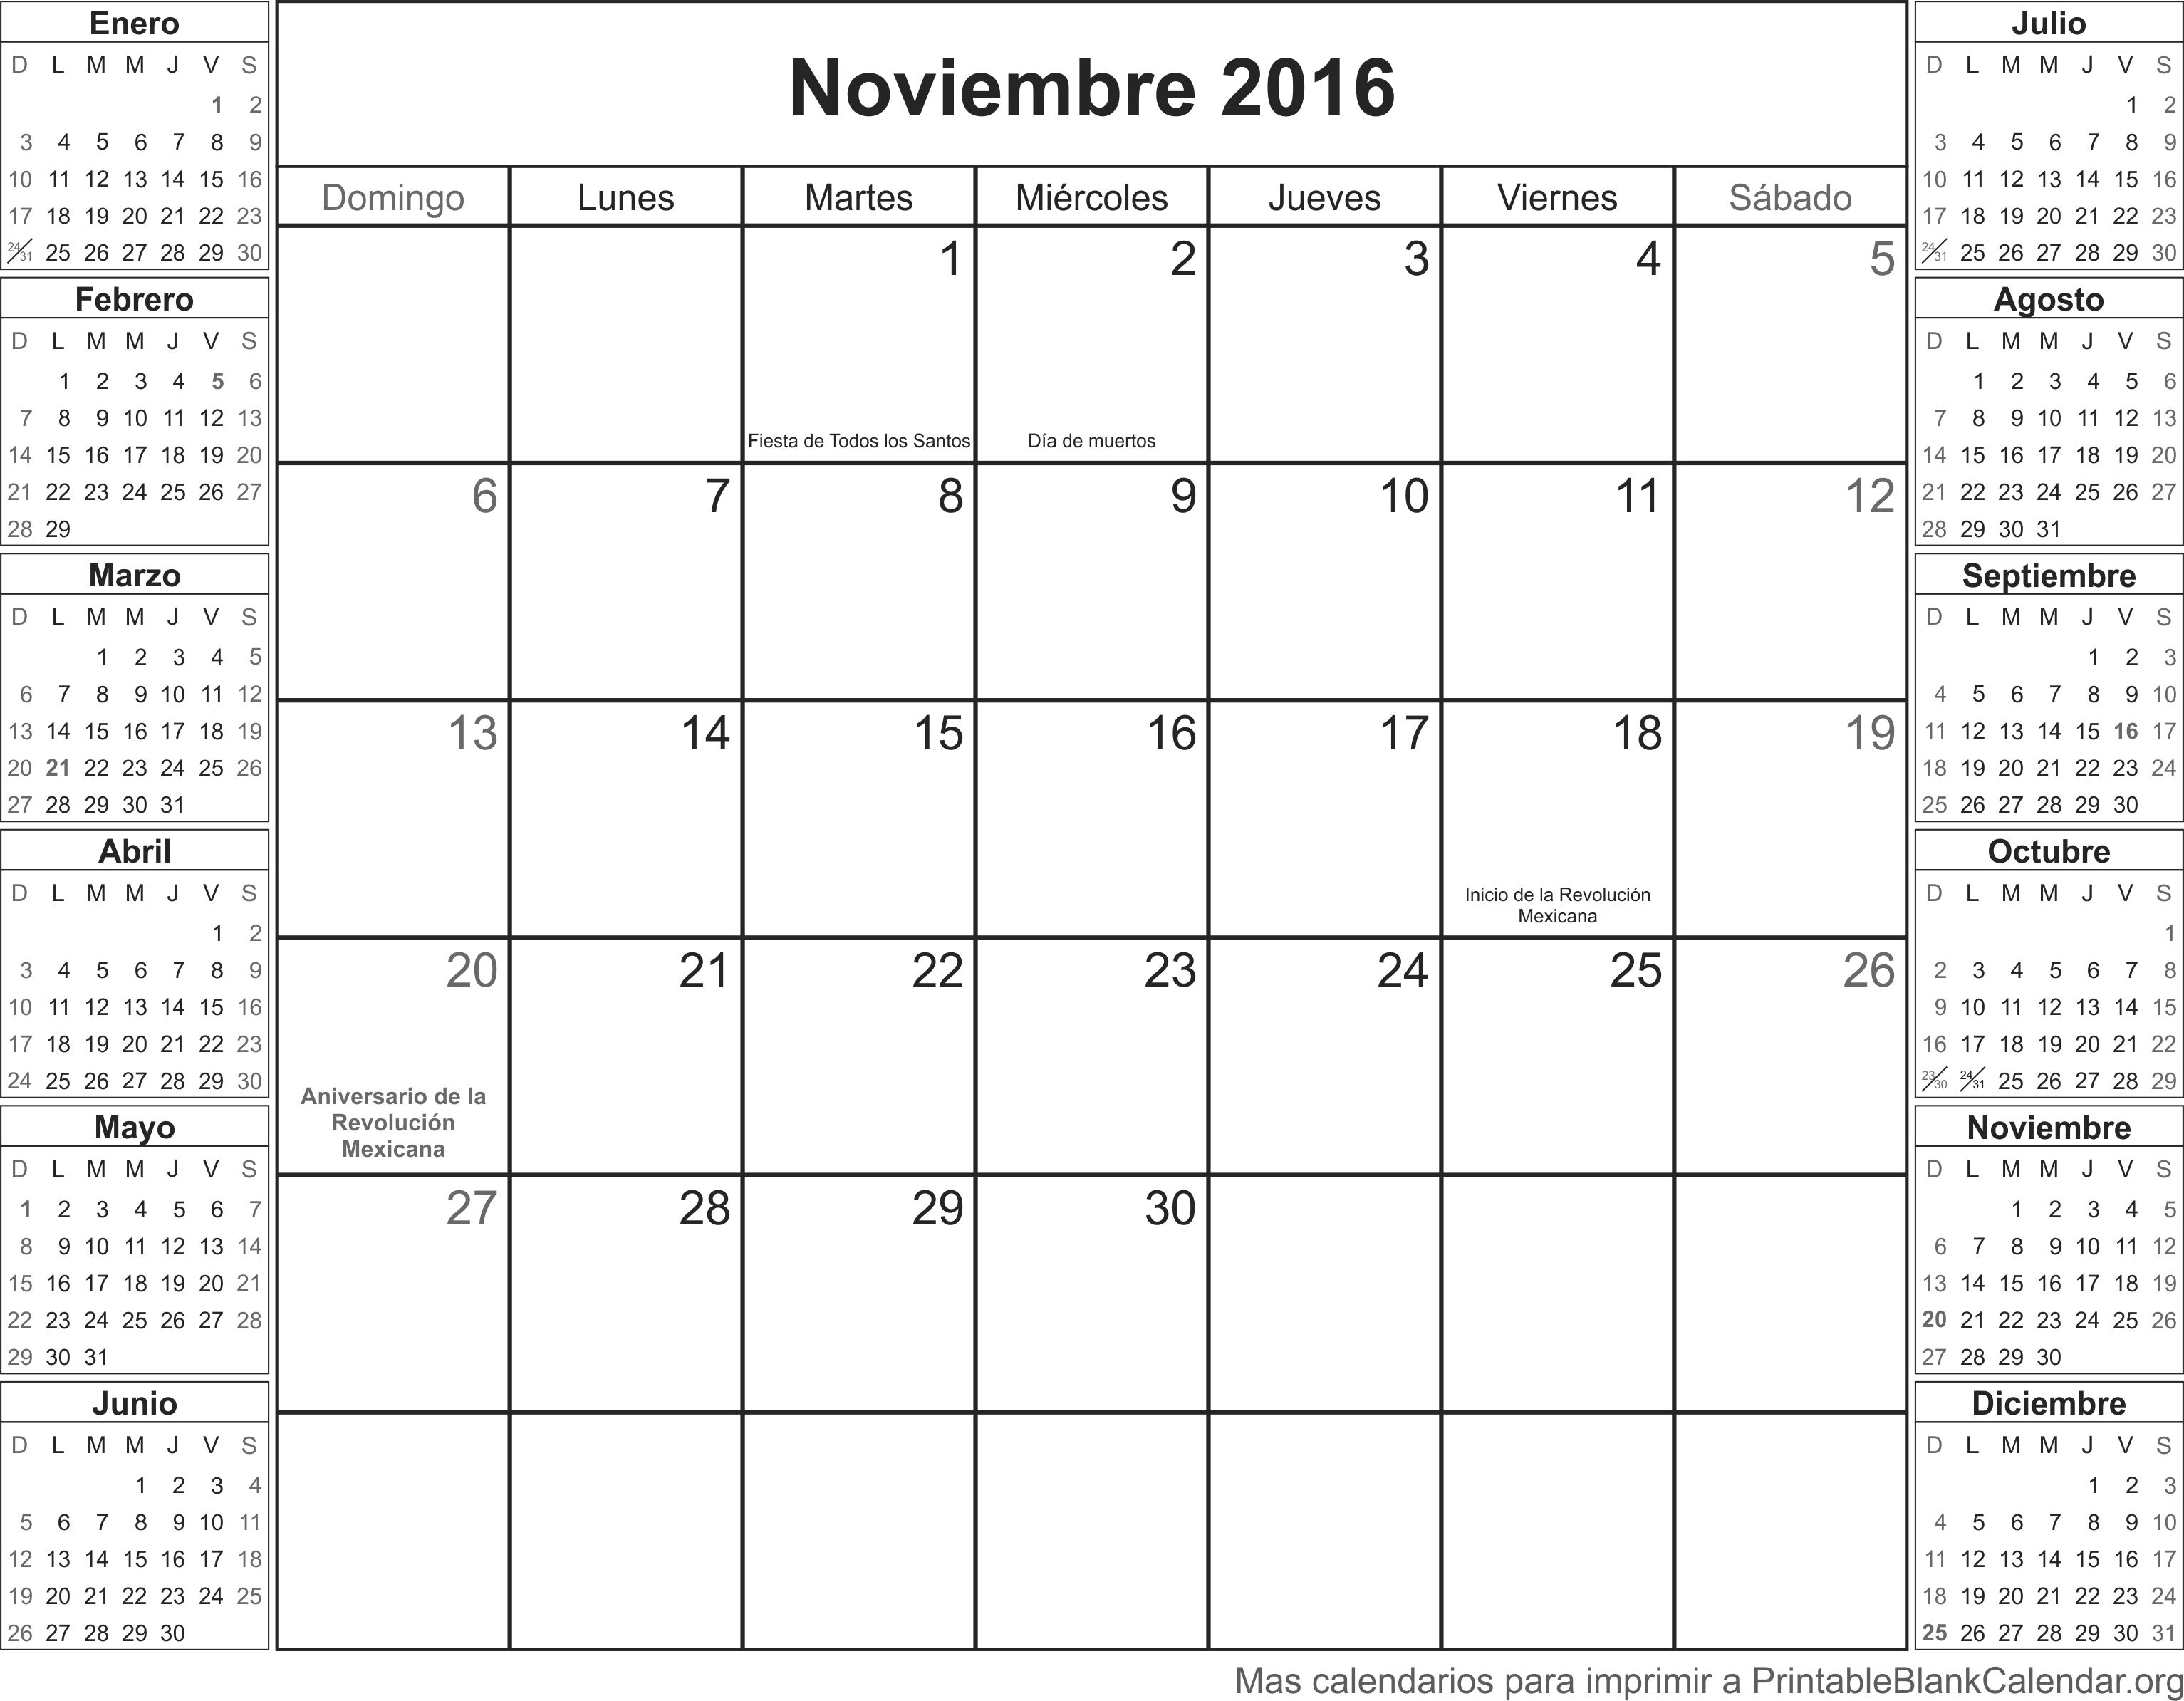 Noviembre 2016 calendario